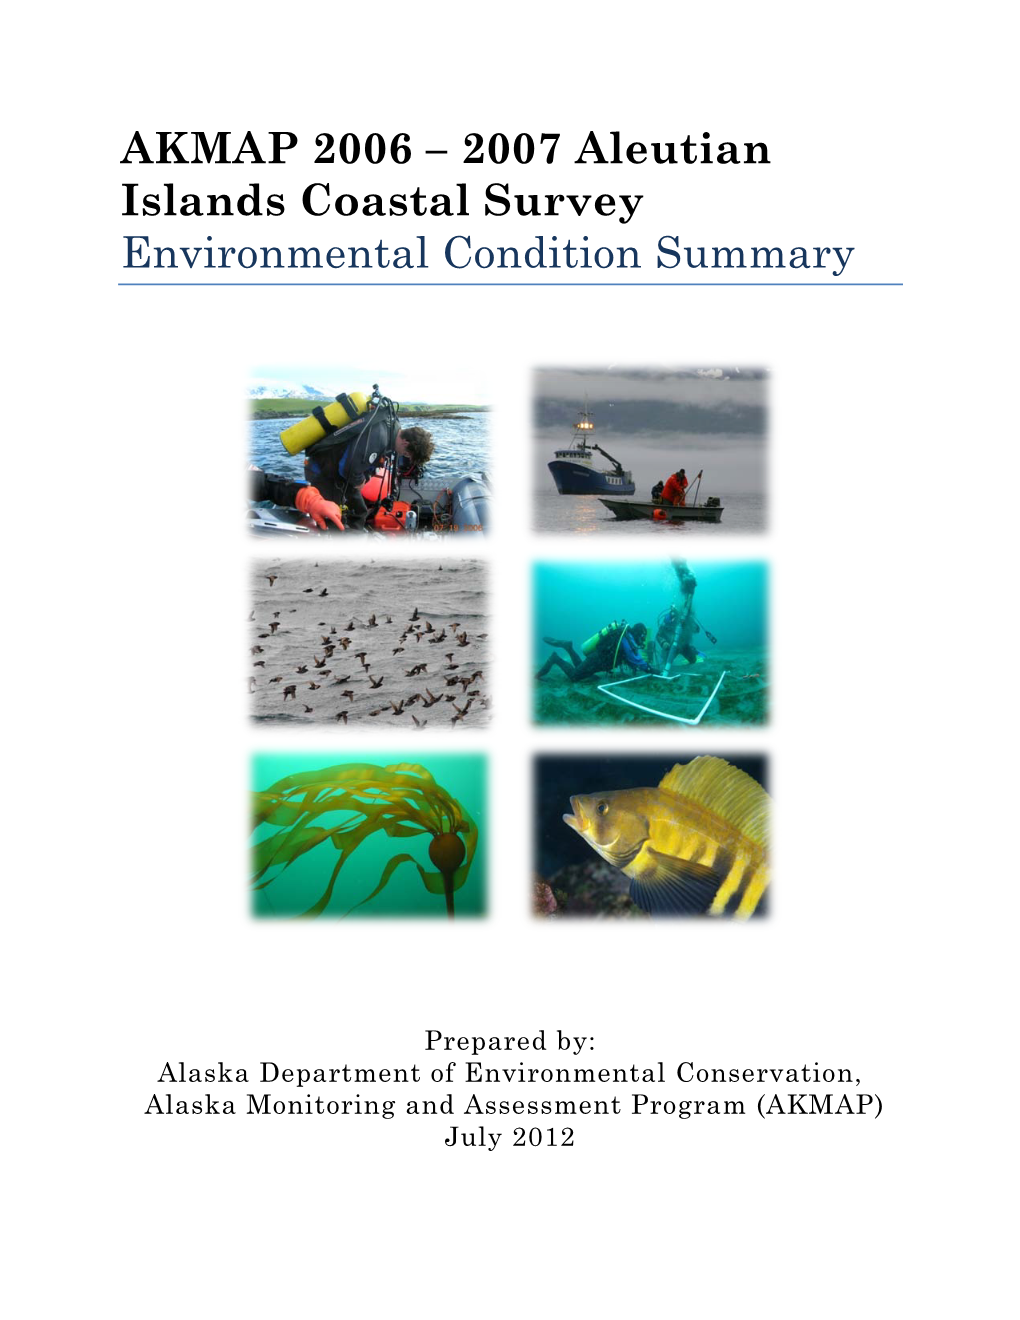 AKMAP 2006 – 2007 Aleutian Islands Coastal Survey Environmental Condition Summary